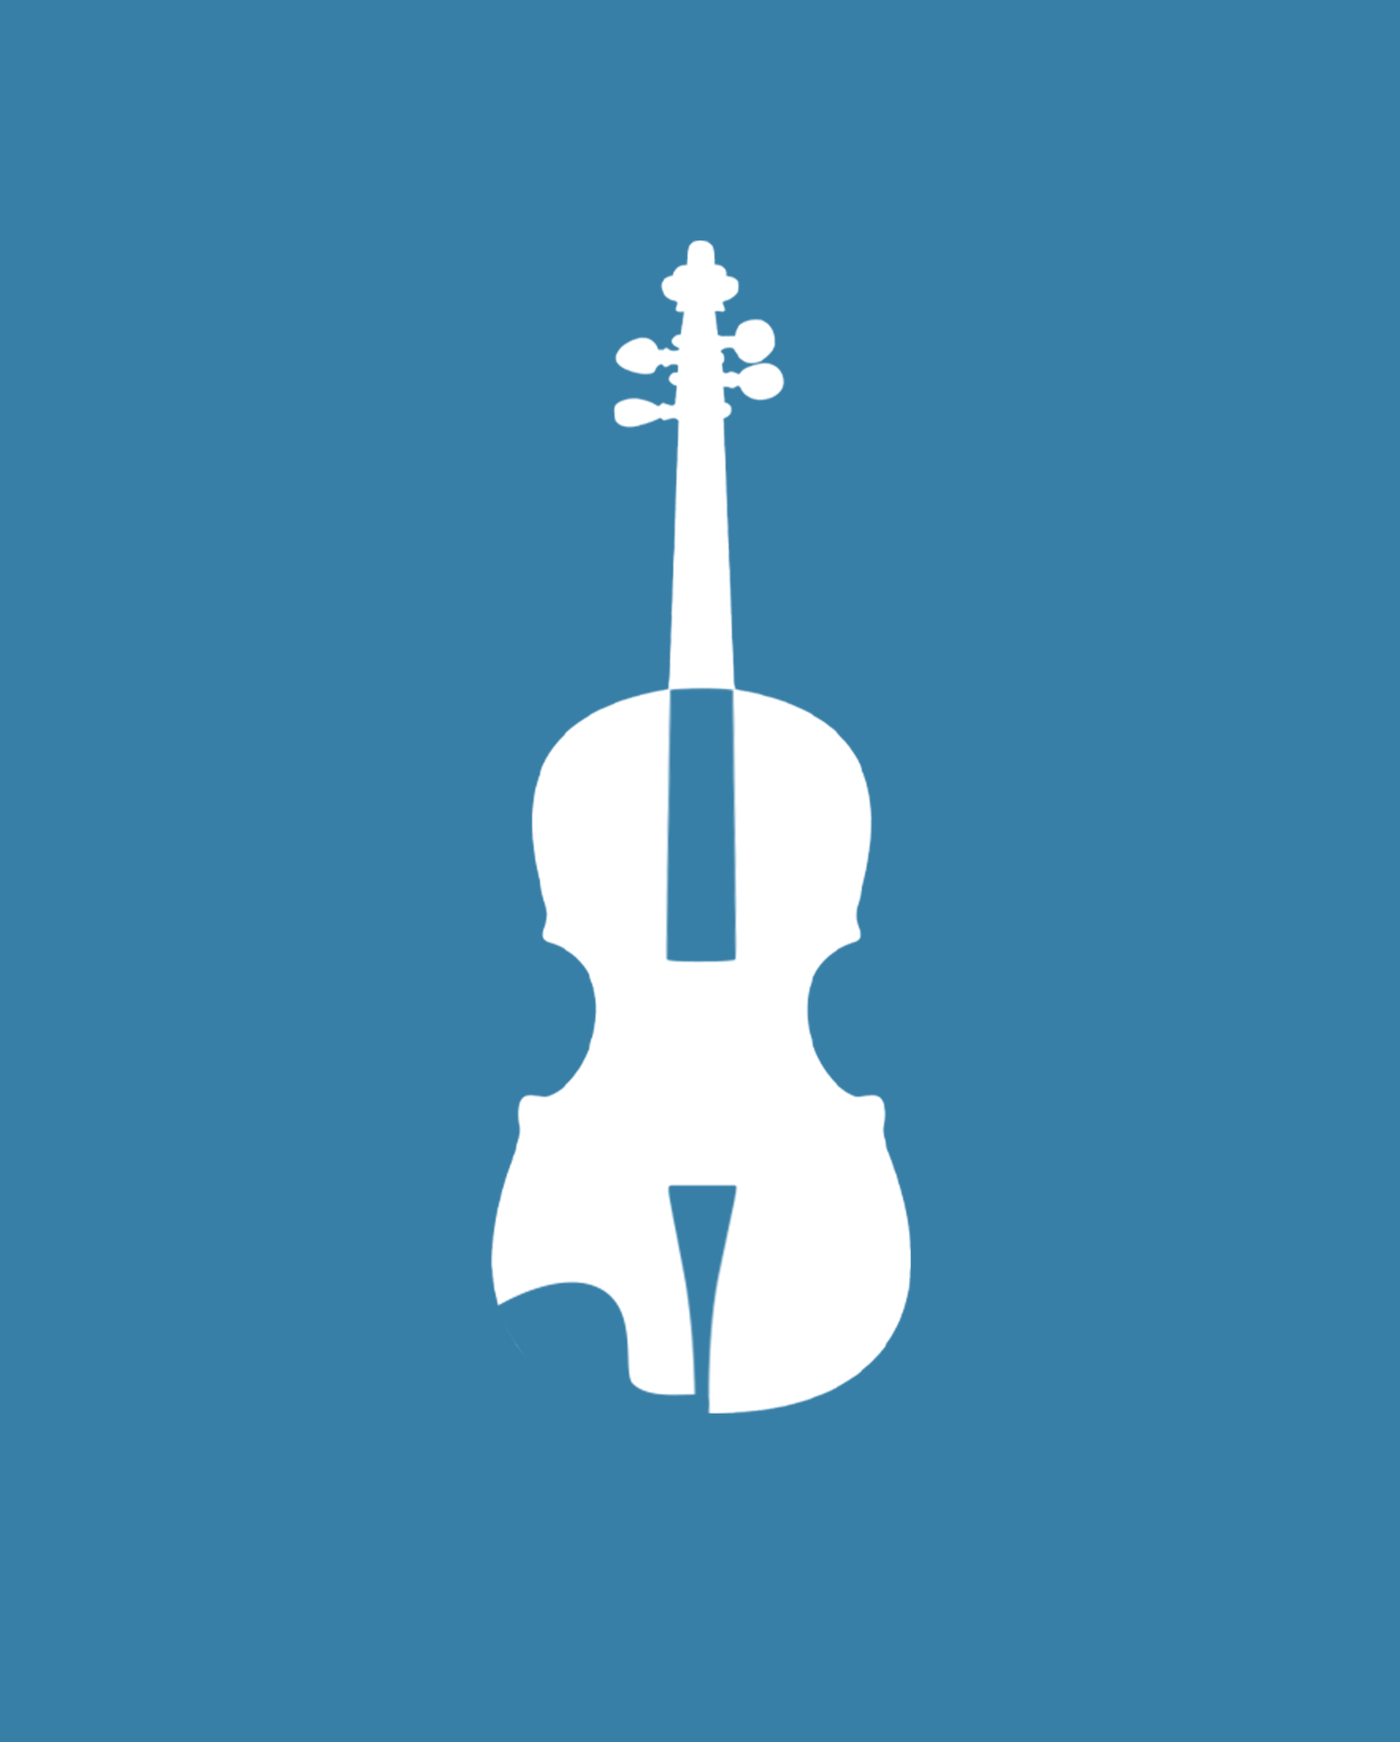 blue violins